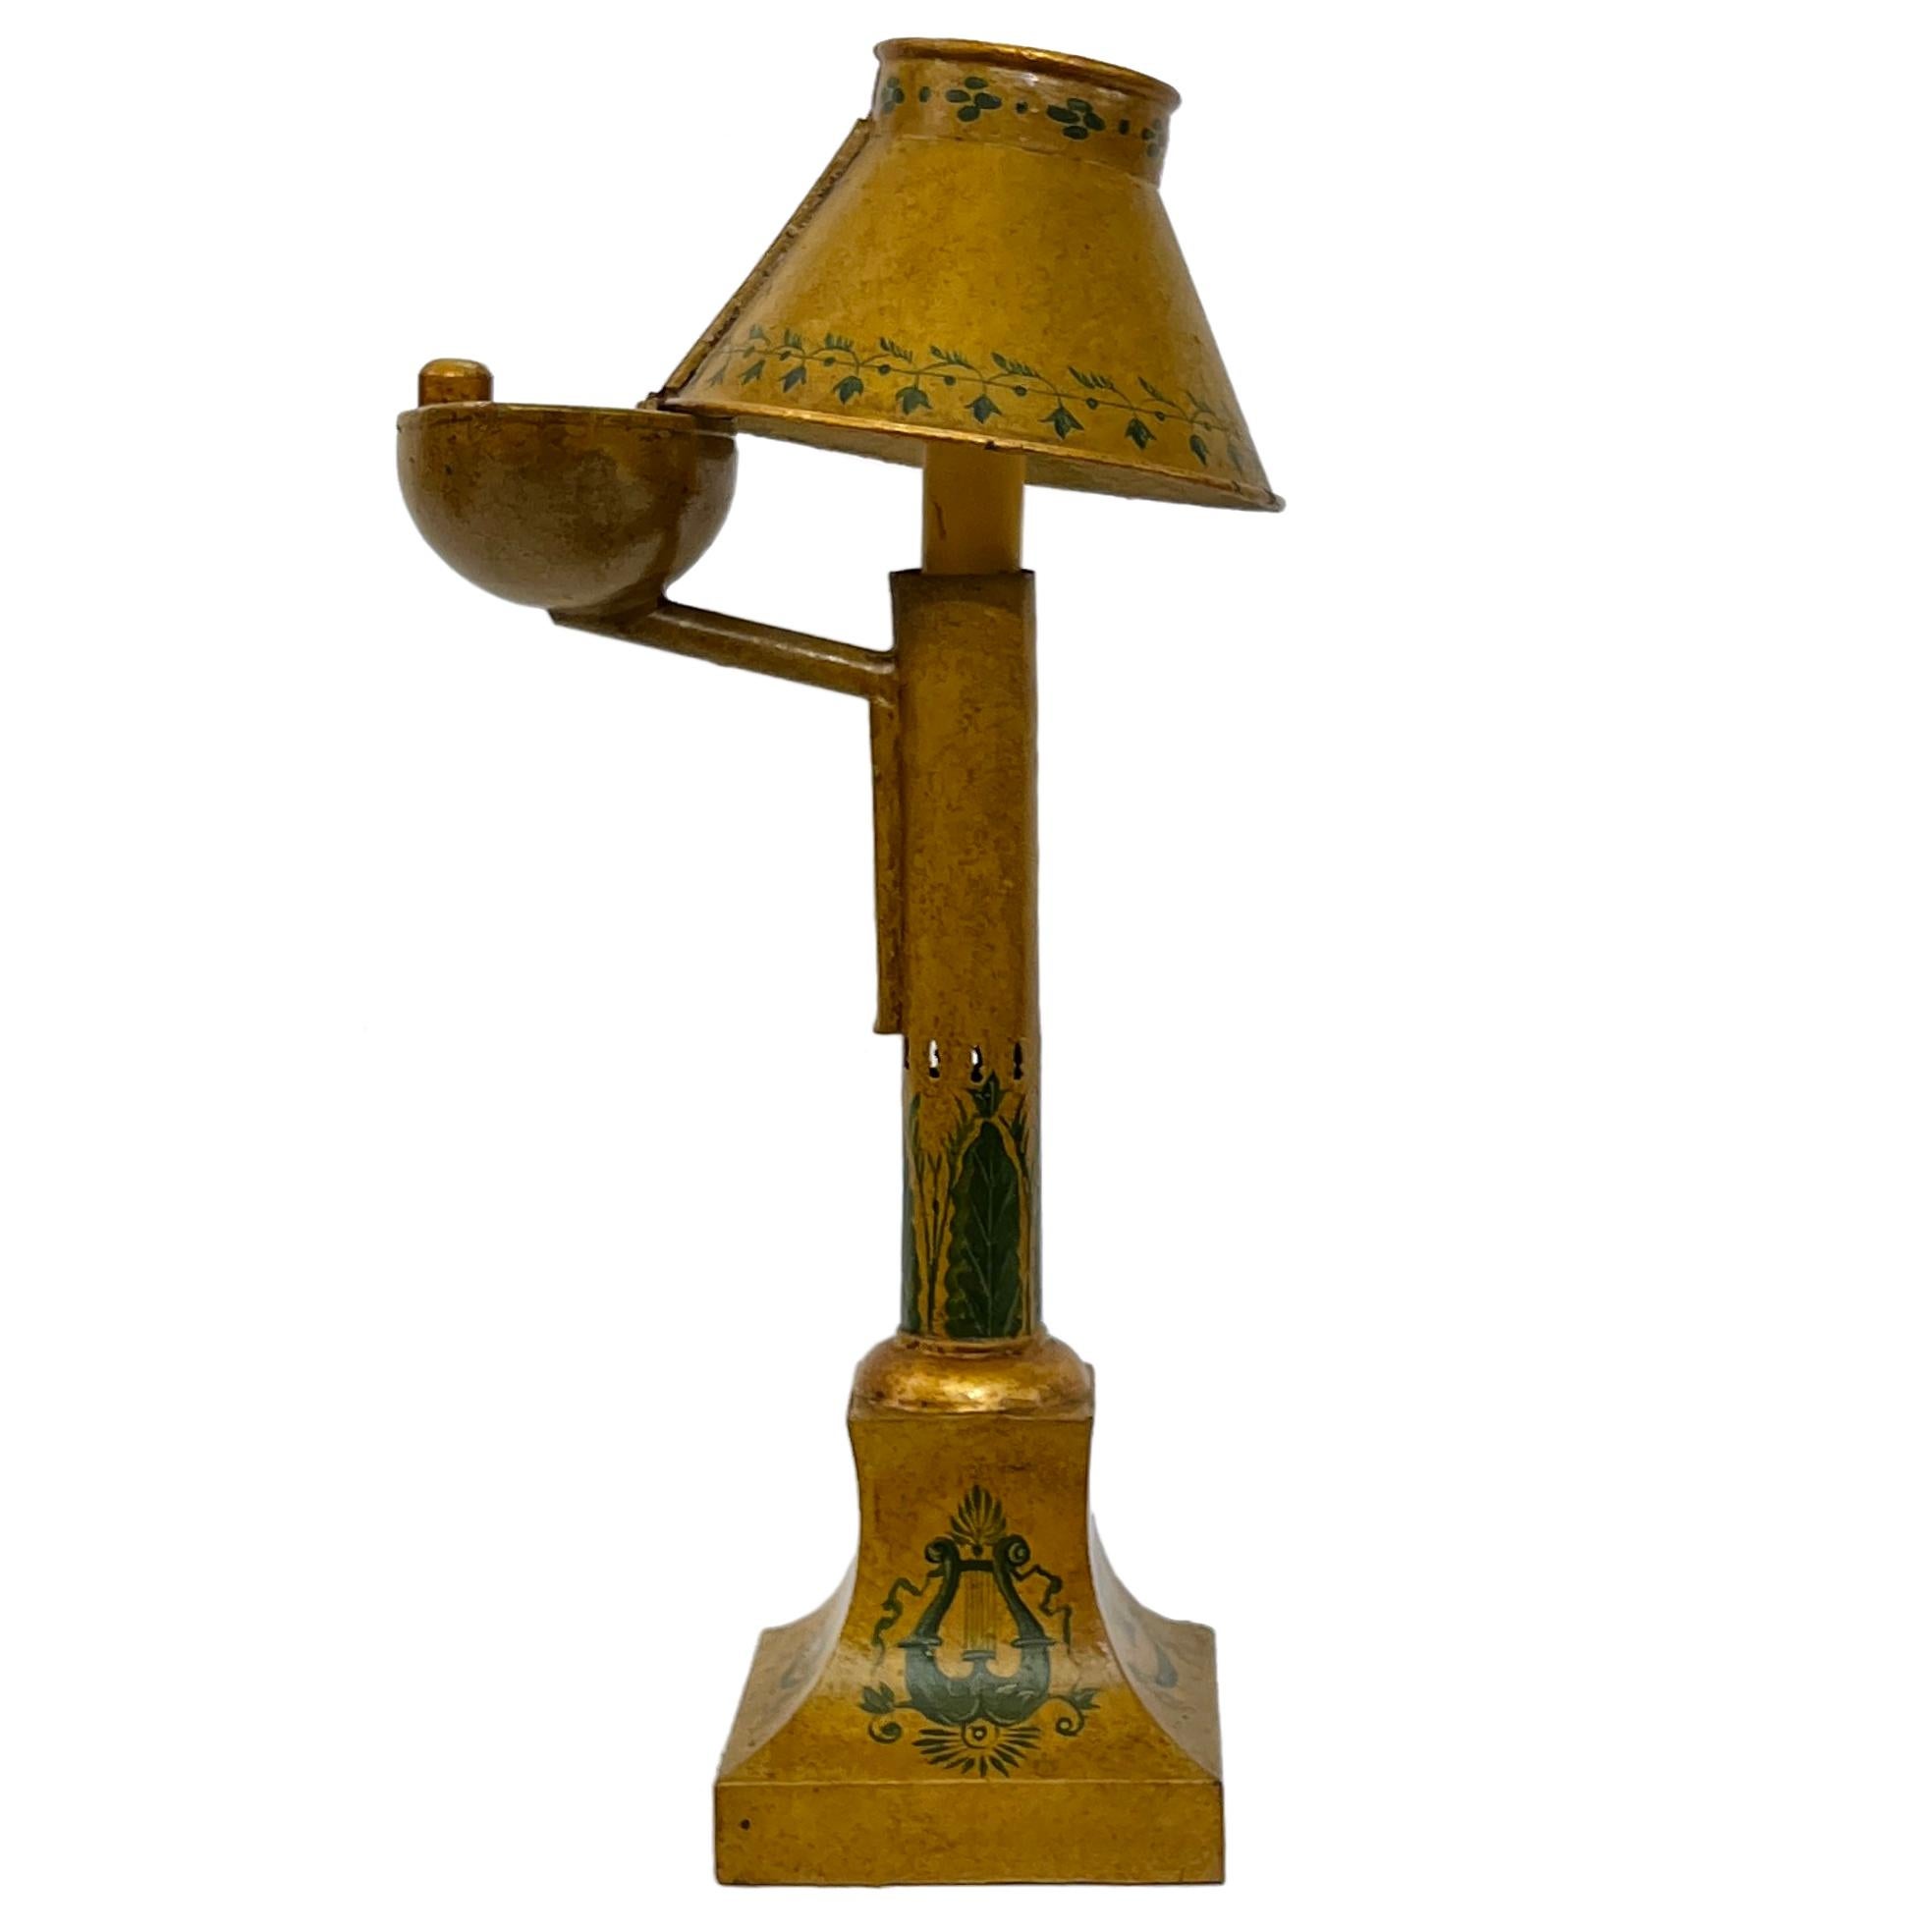 CIRCA spätes 19. Jahrhundert Französisch gemalt tole Lampe, für den elektrischen Betrieb verdrahtet.

Abmessungen:
Höhe: 14.75